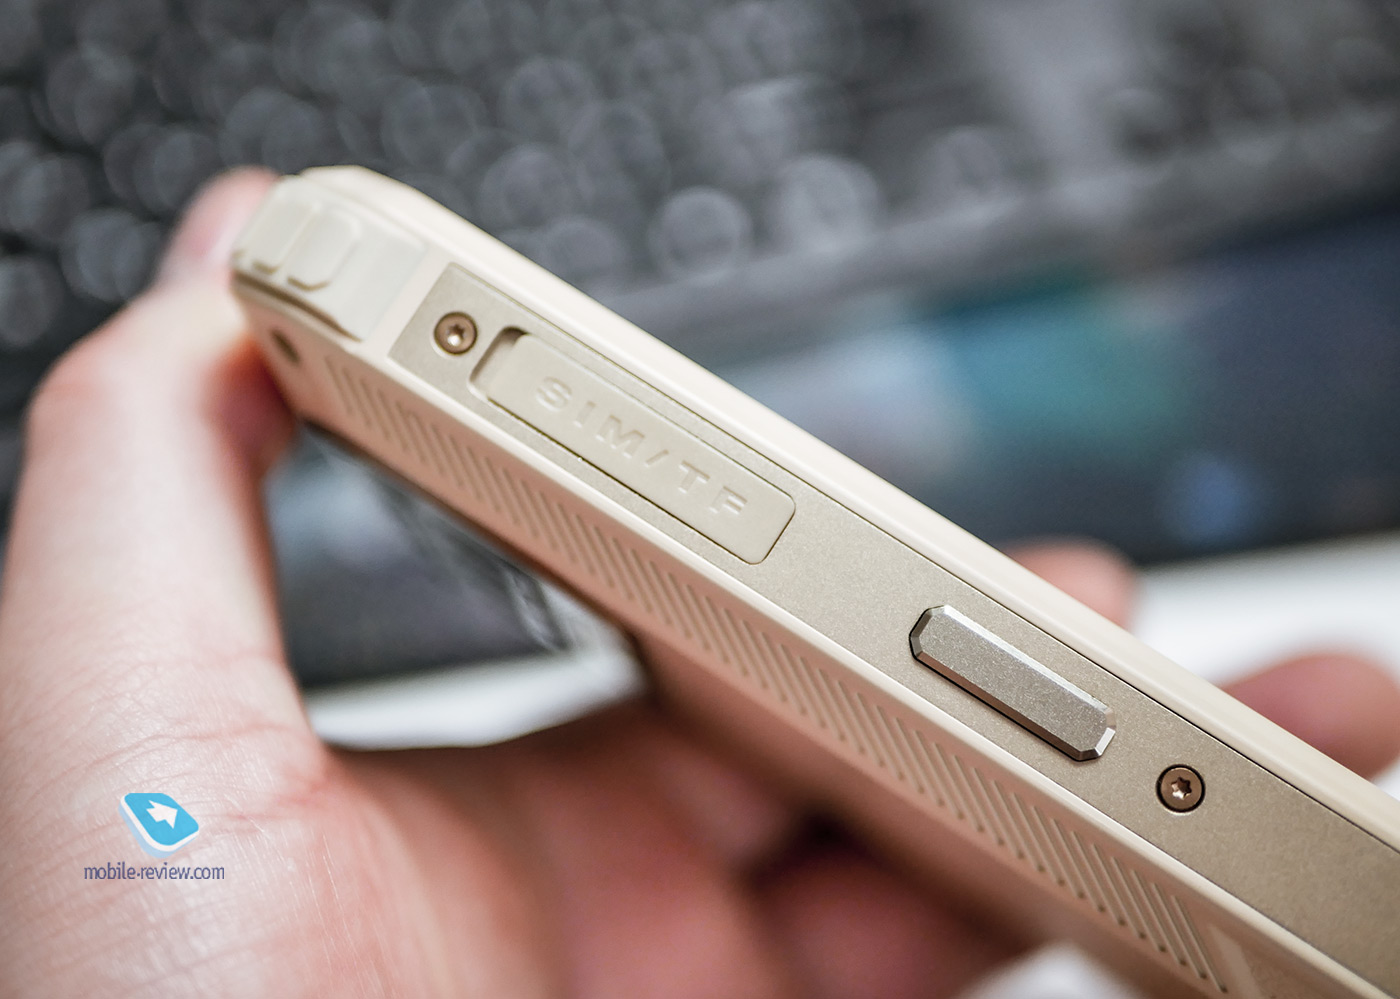 Обзор загадочного защищенного смартфона F150 B2021 – этот «зубр» вам точно не по зубам!